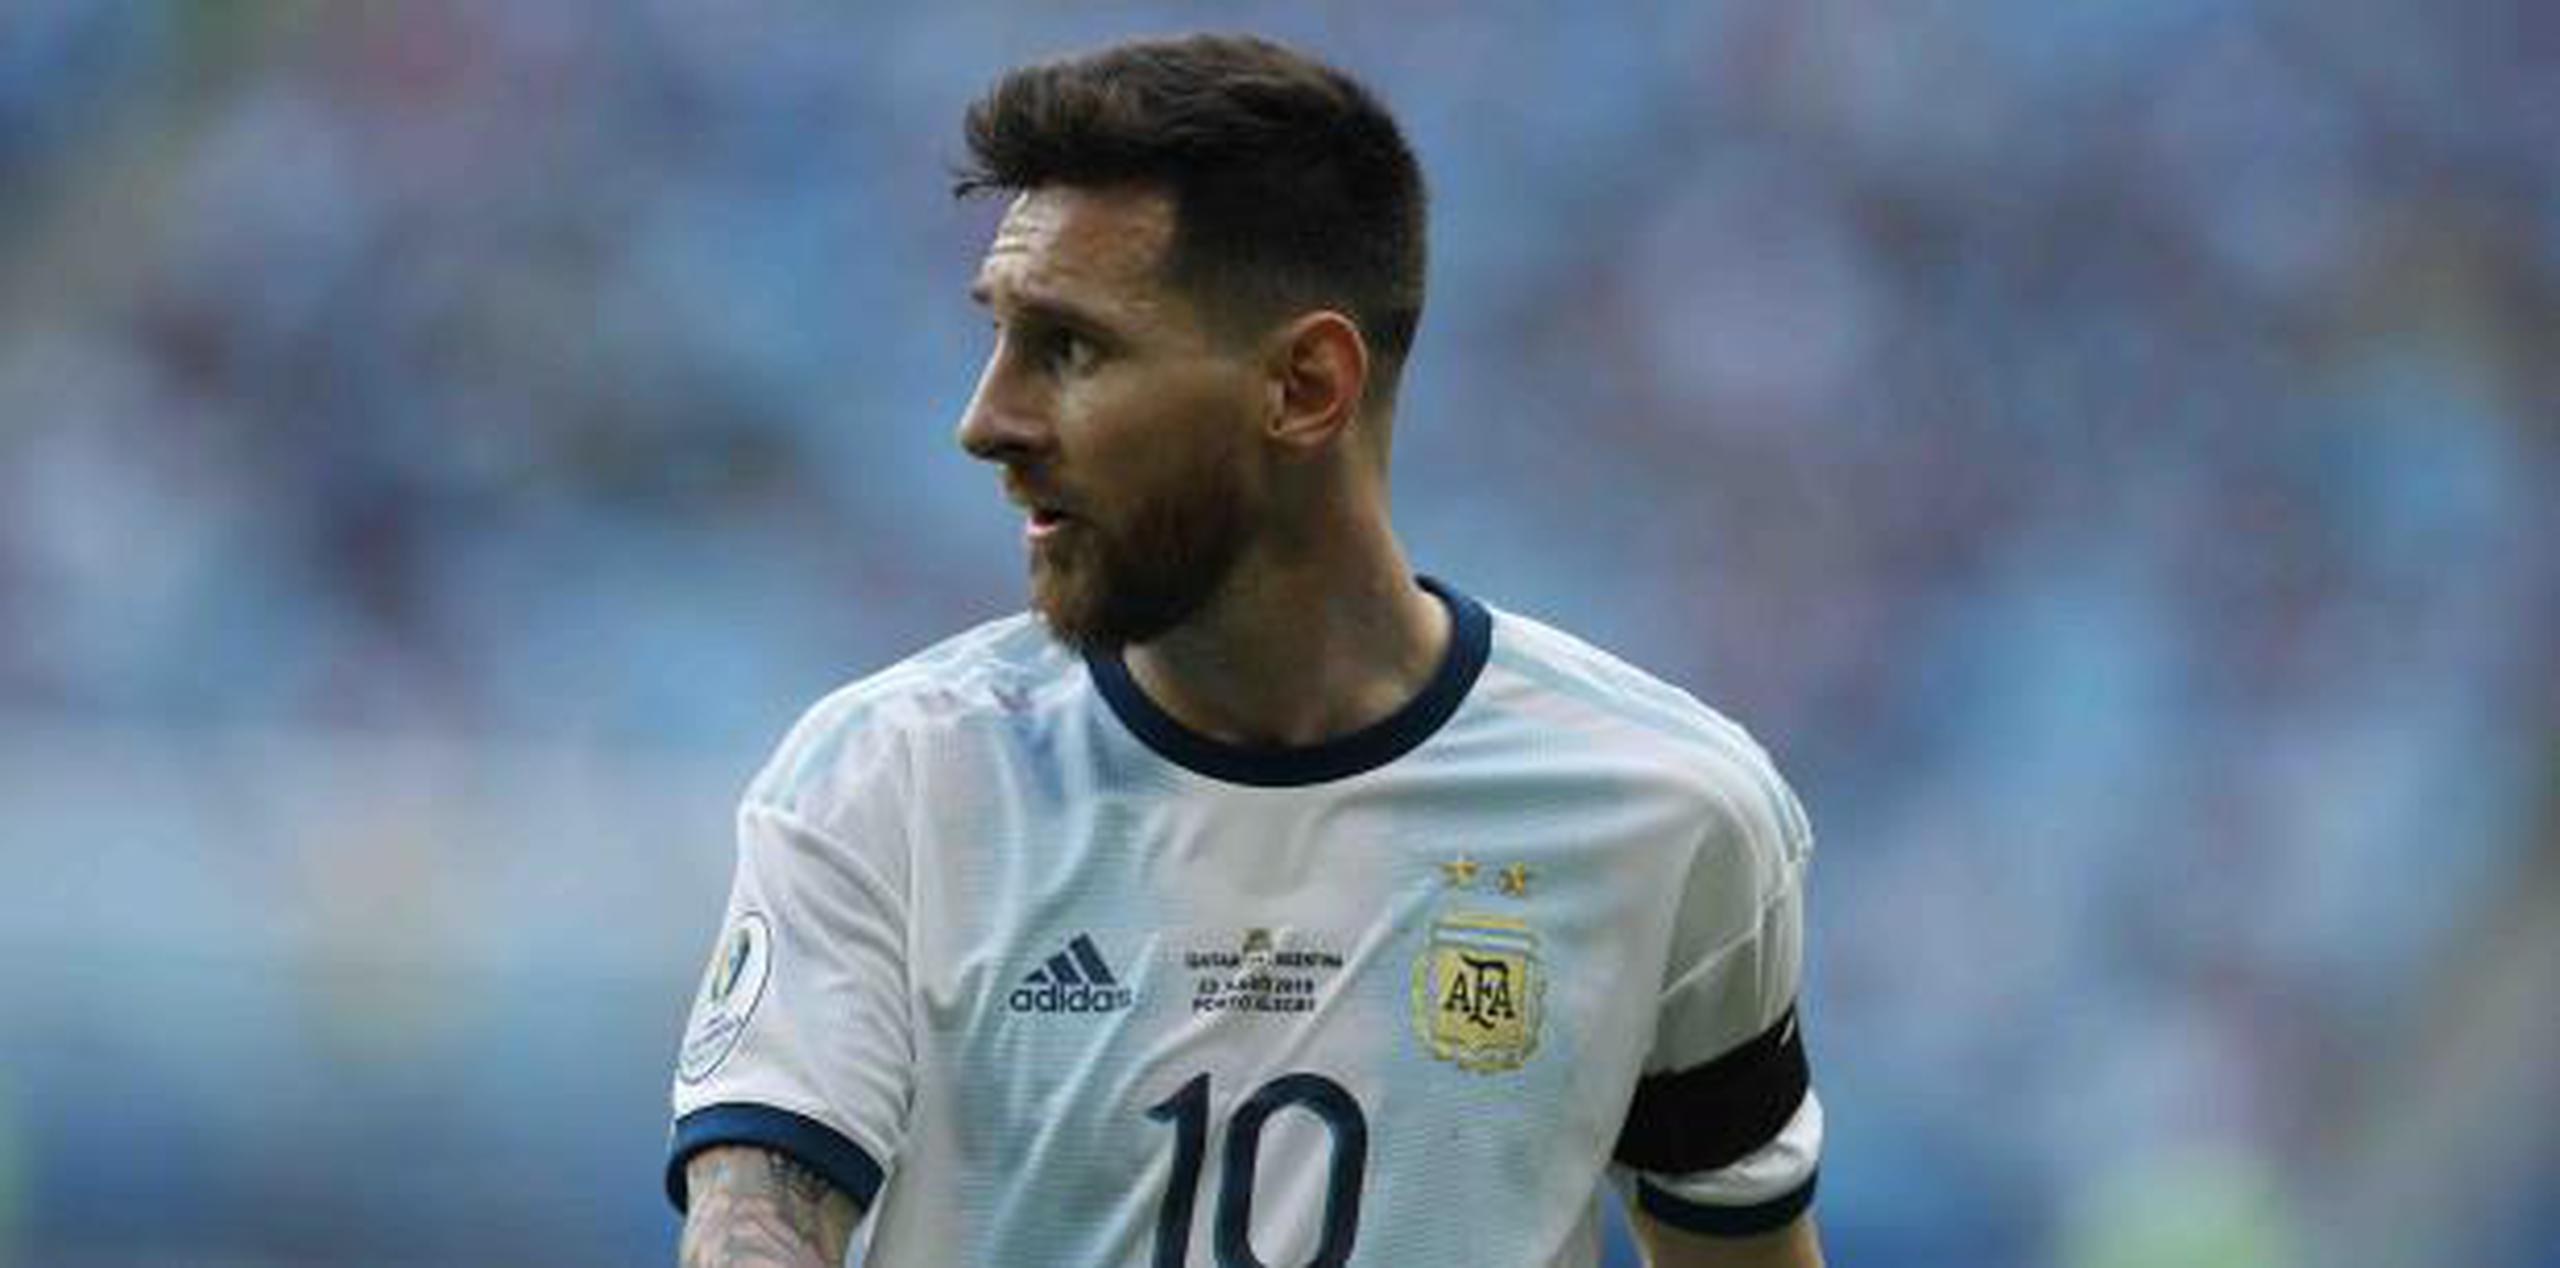 Messi, quien ha pasado inadvertido al momento en la copa, y sus compañeros buscan conseguir el primer título de la Albiceleste en 26 años, el cual sería el primero del crack con la selección mayor. (AP)

